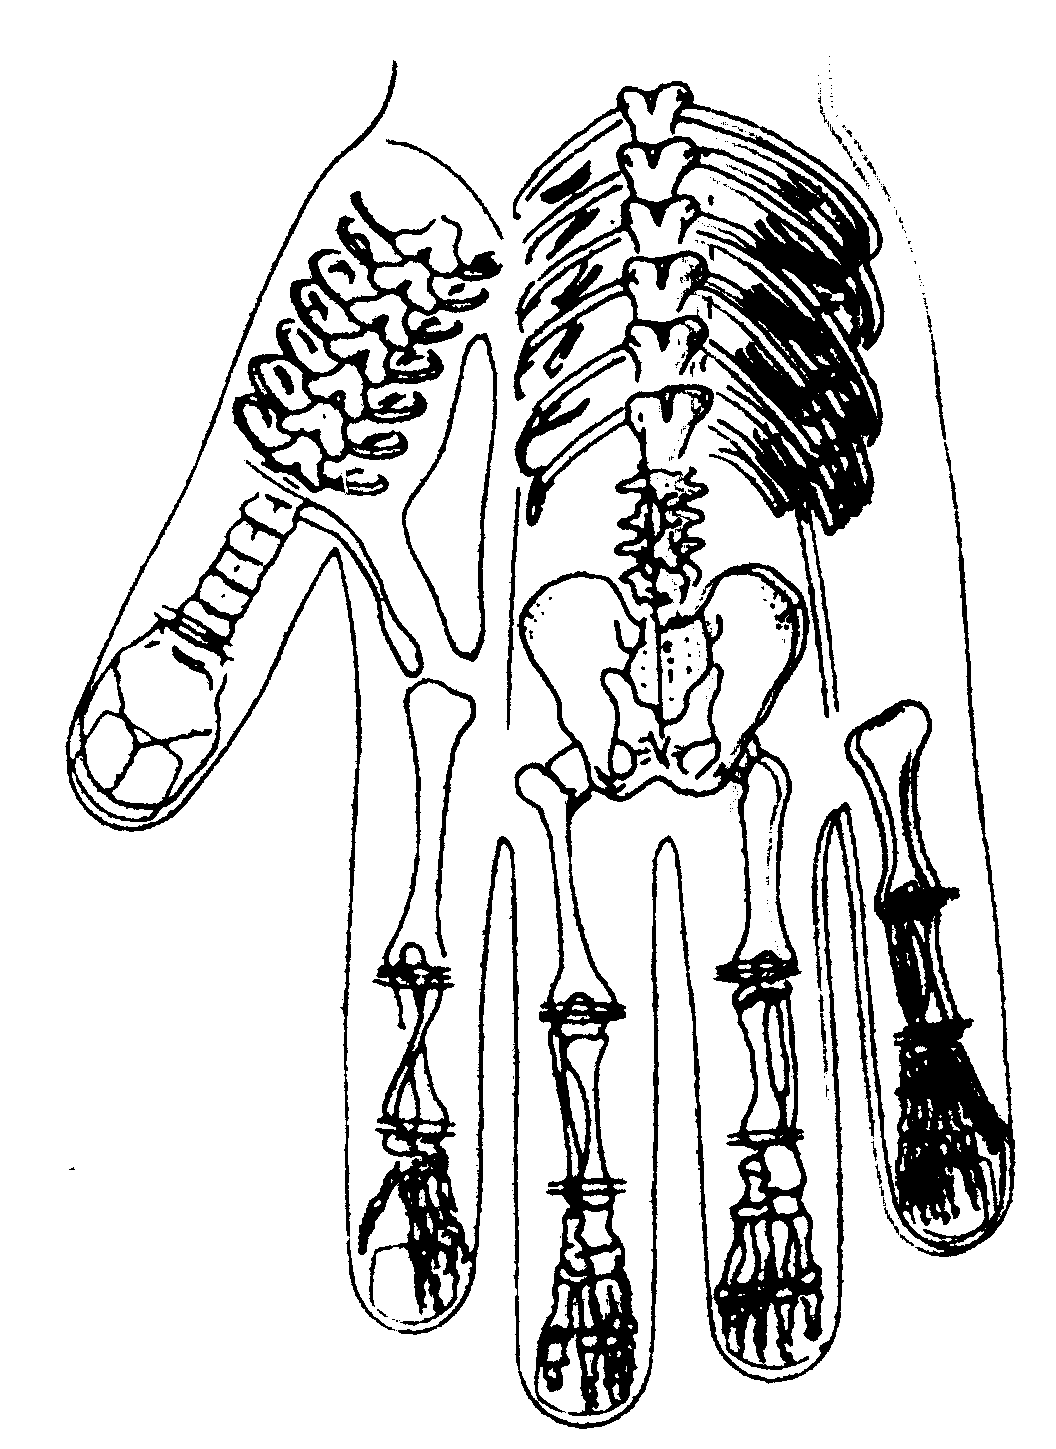 Mapa padrao da parte posterior do corpo, mão esquerda